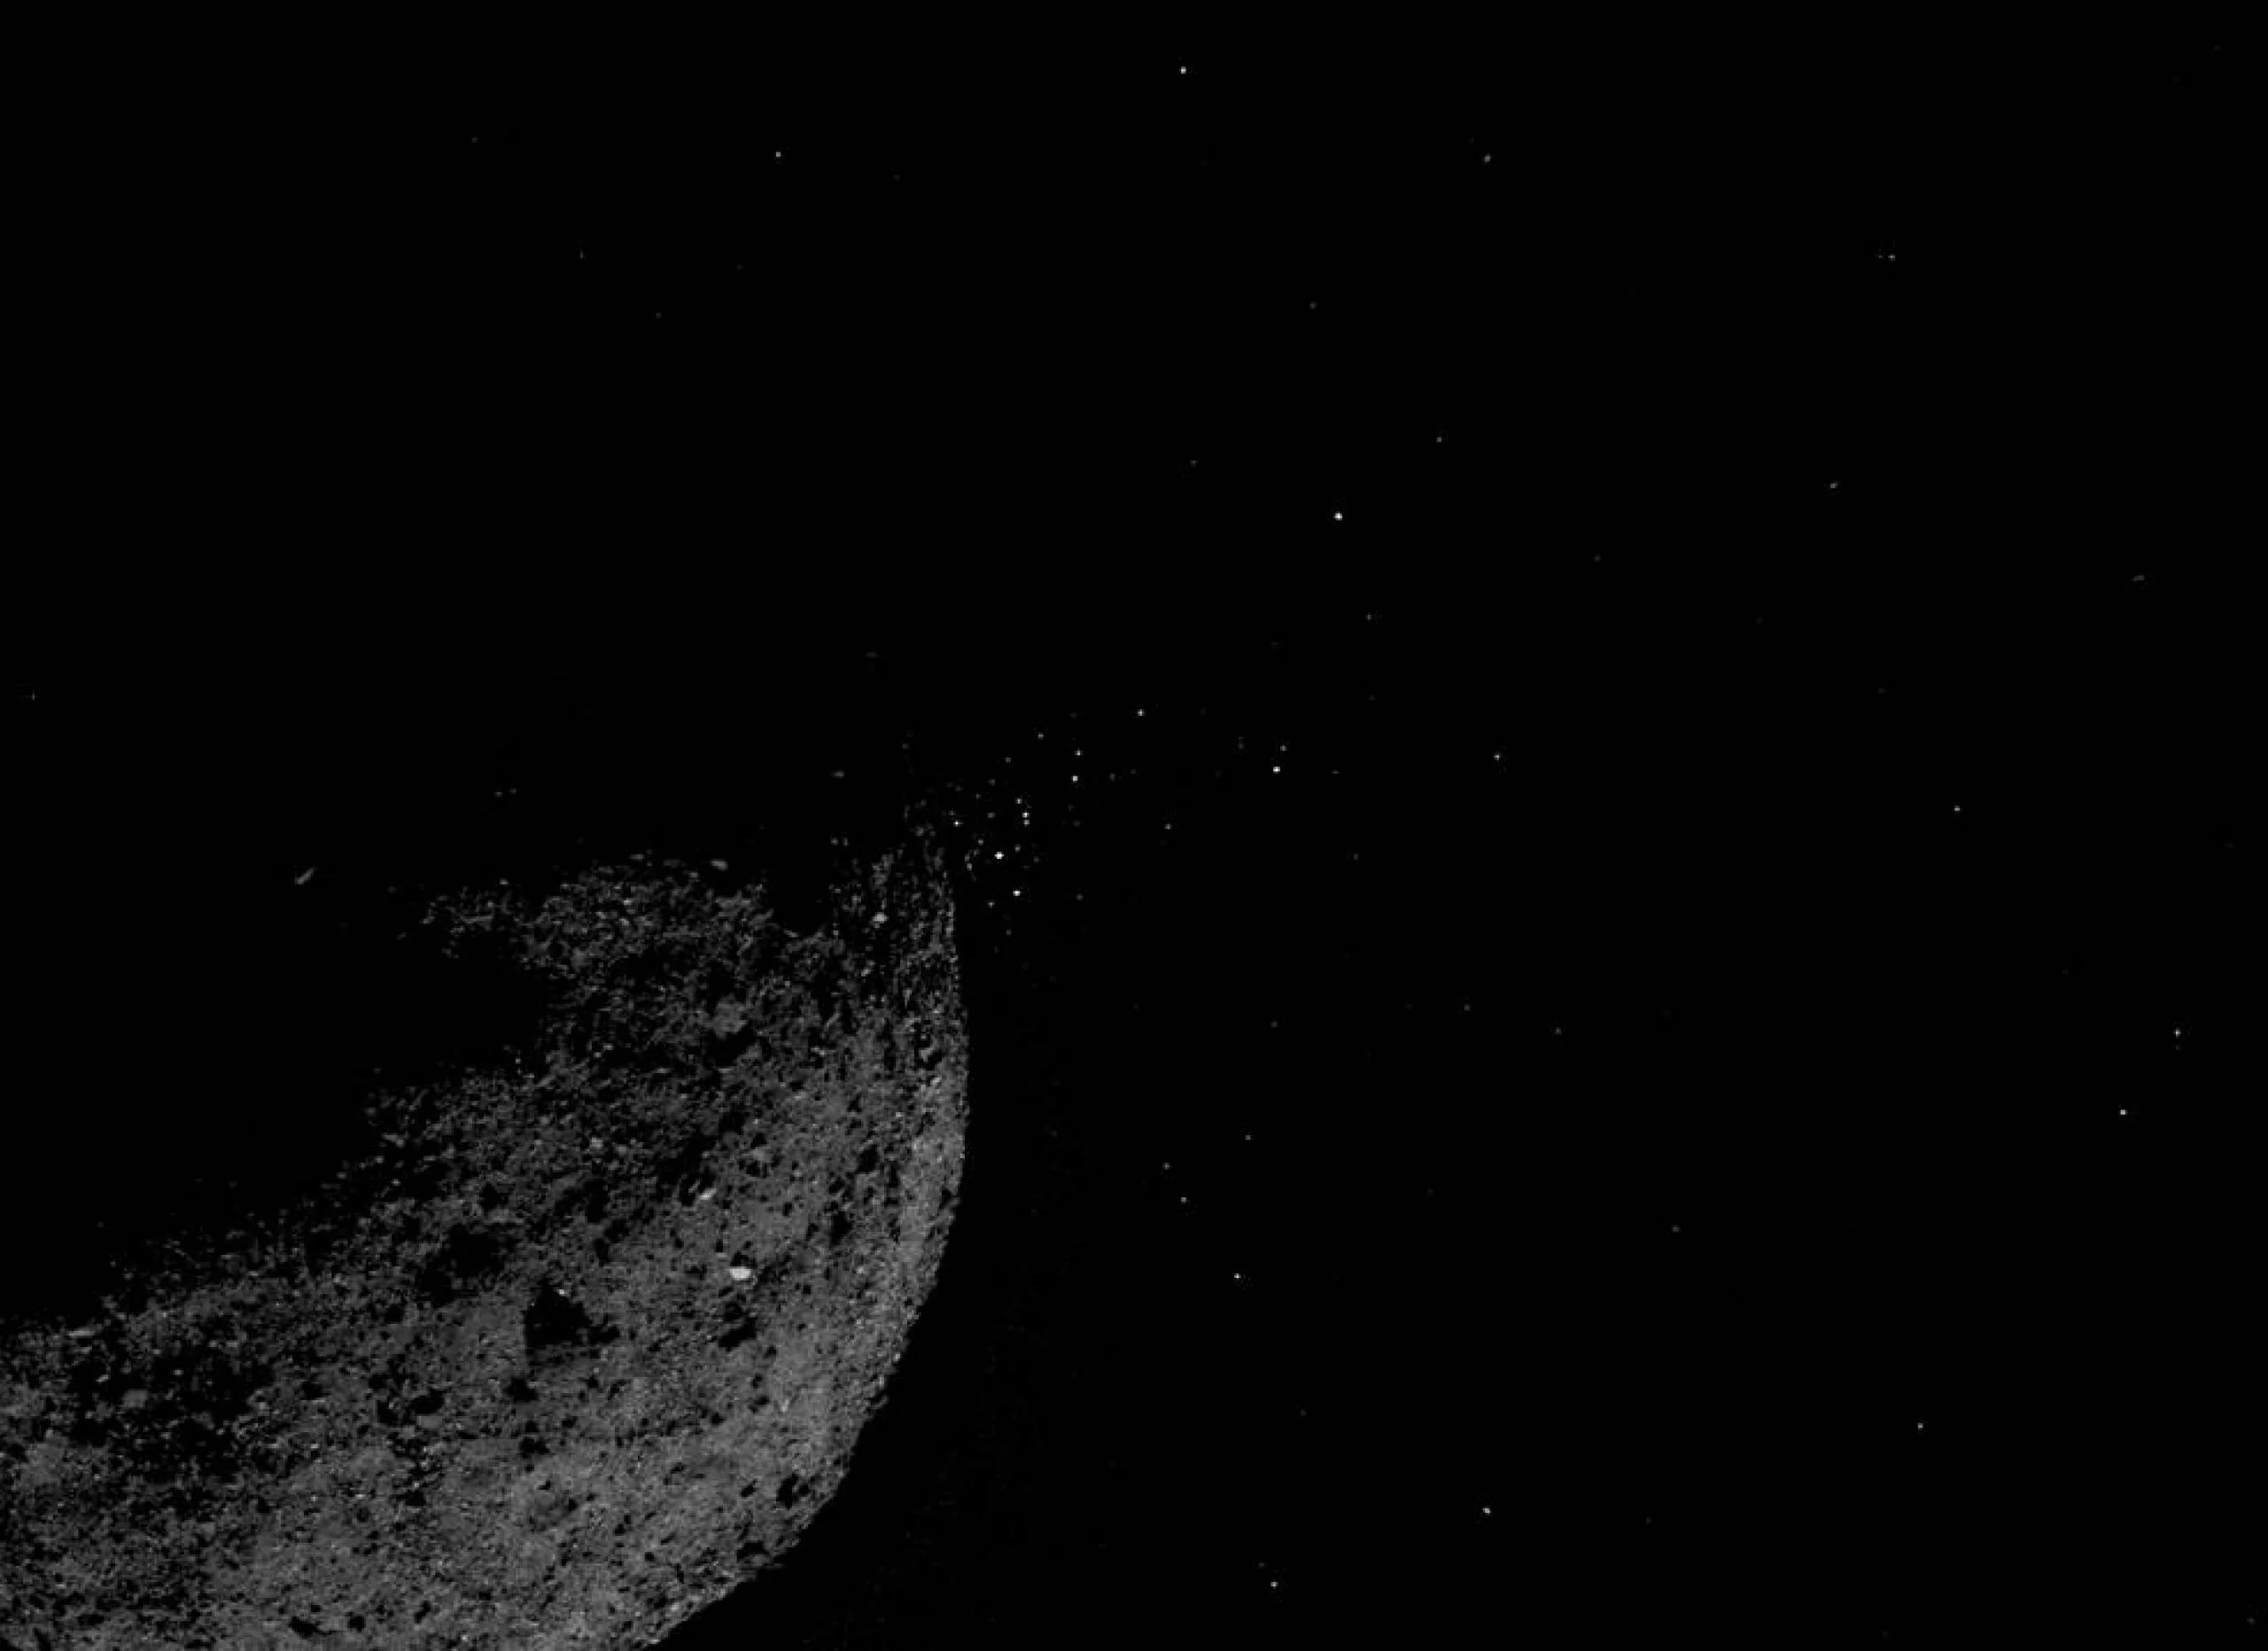 Esta vista del asteroide Bennu expulsando partículas de su superficie, obtenida el 19 de enero de 2019, fue creada combinando dos imágenes tomadas a bordo de la nave espacial OSIRIS-REx de la NASA. También se aplicaron otras técnicas de procesamiento de imágenes, como recortar y ajustar el brillo y el contraste de cada imagen. Créditos: NASA/Goddard/Universidad de Arizona/Lockheed Martin